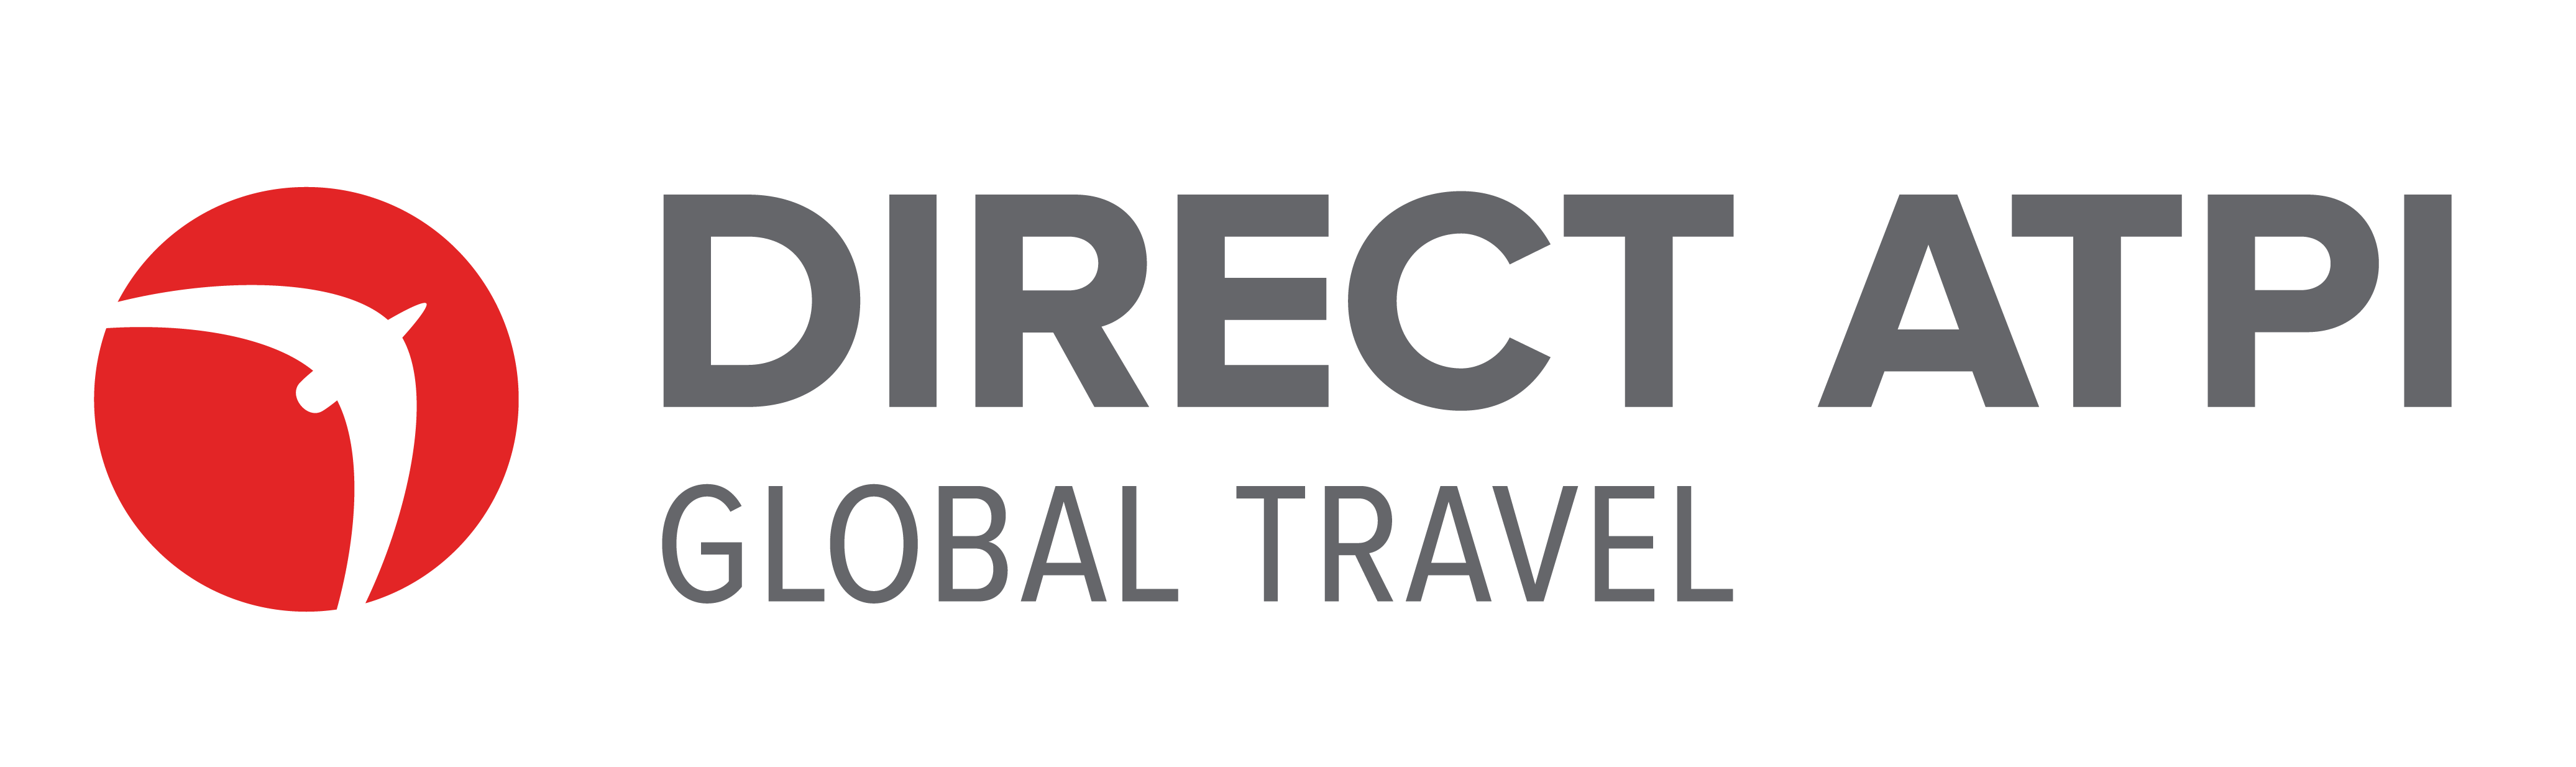 Direct ATPI Logo